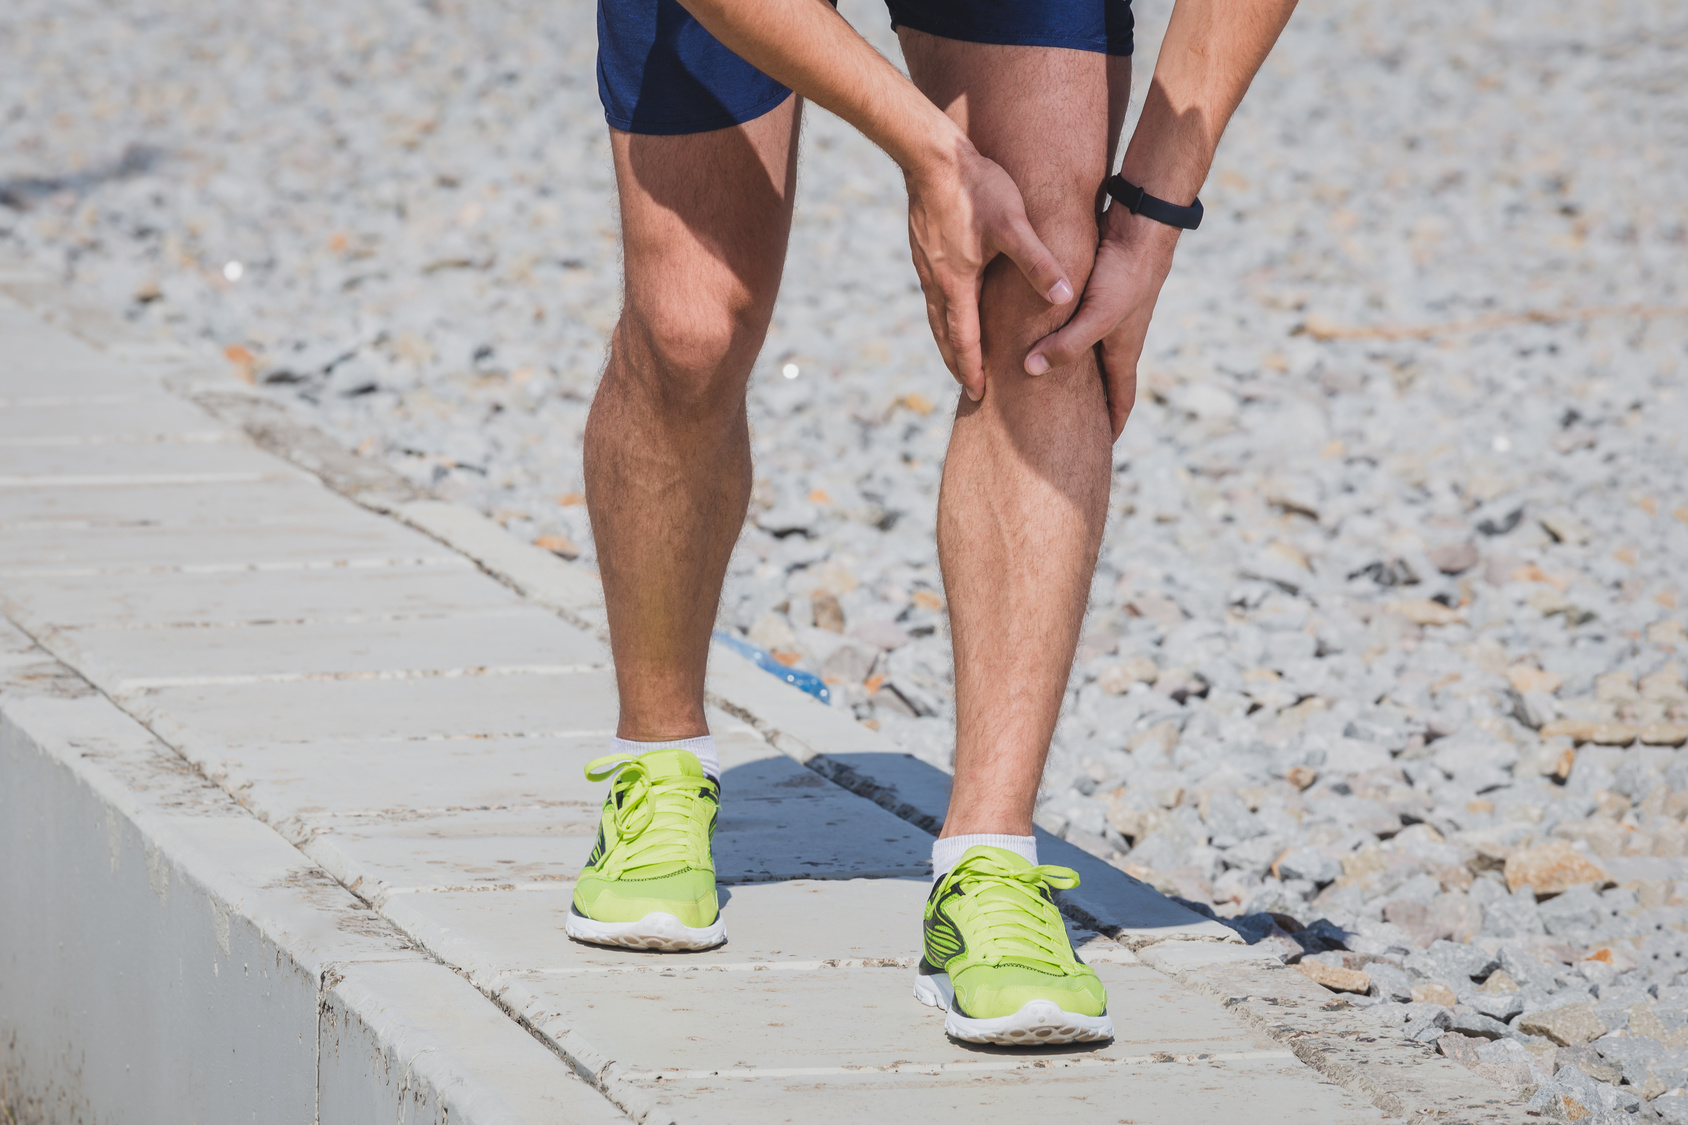 runner training through pain